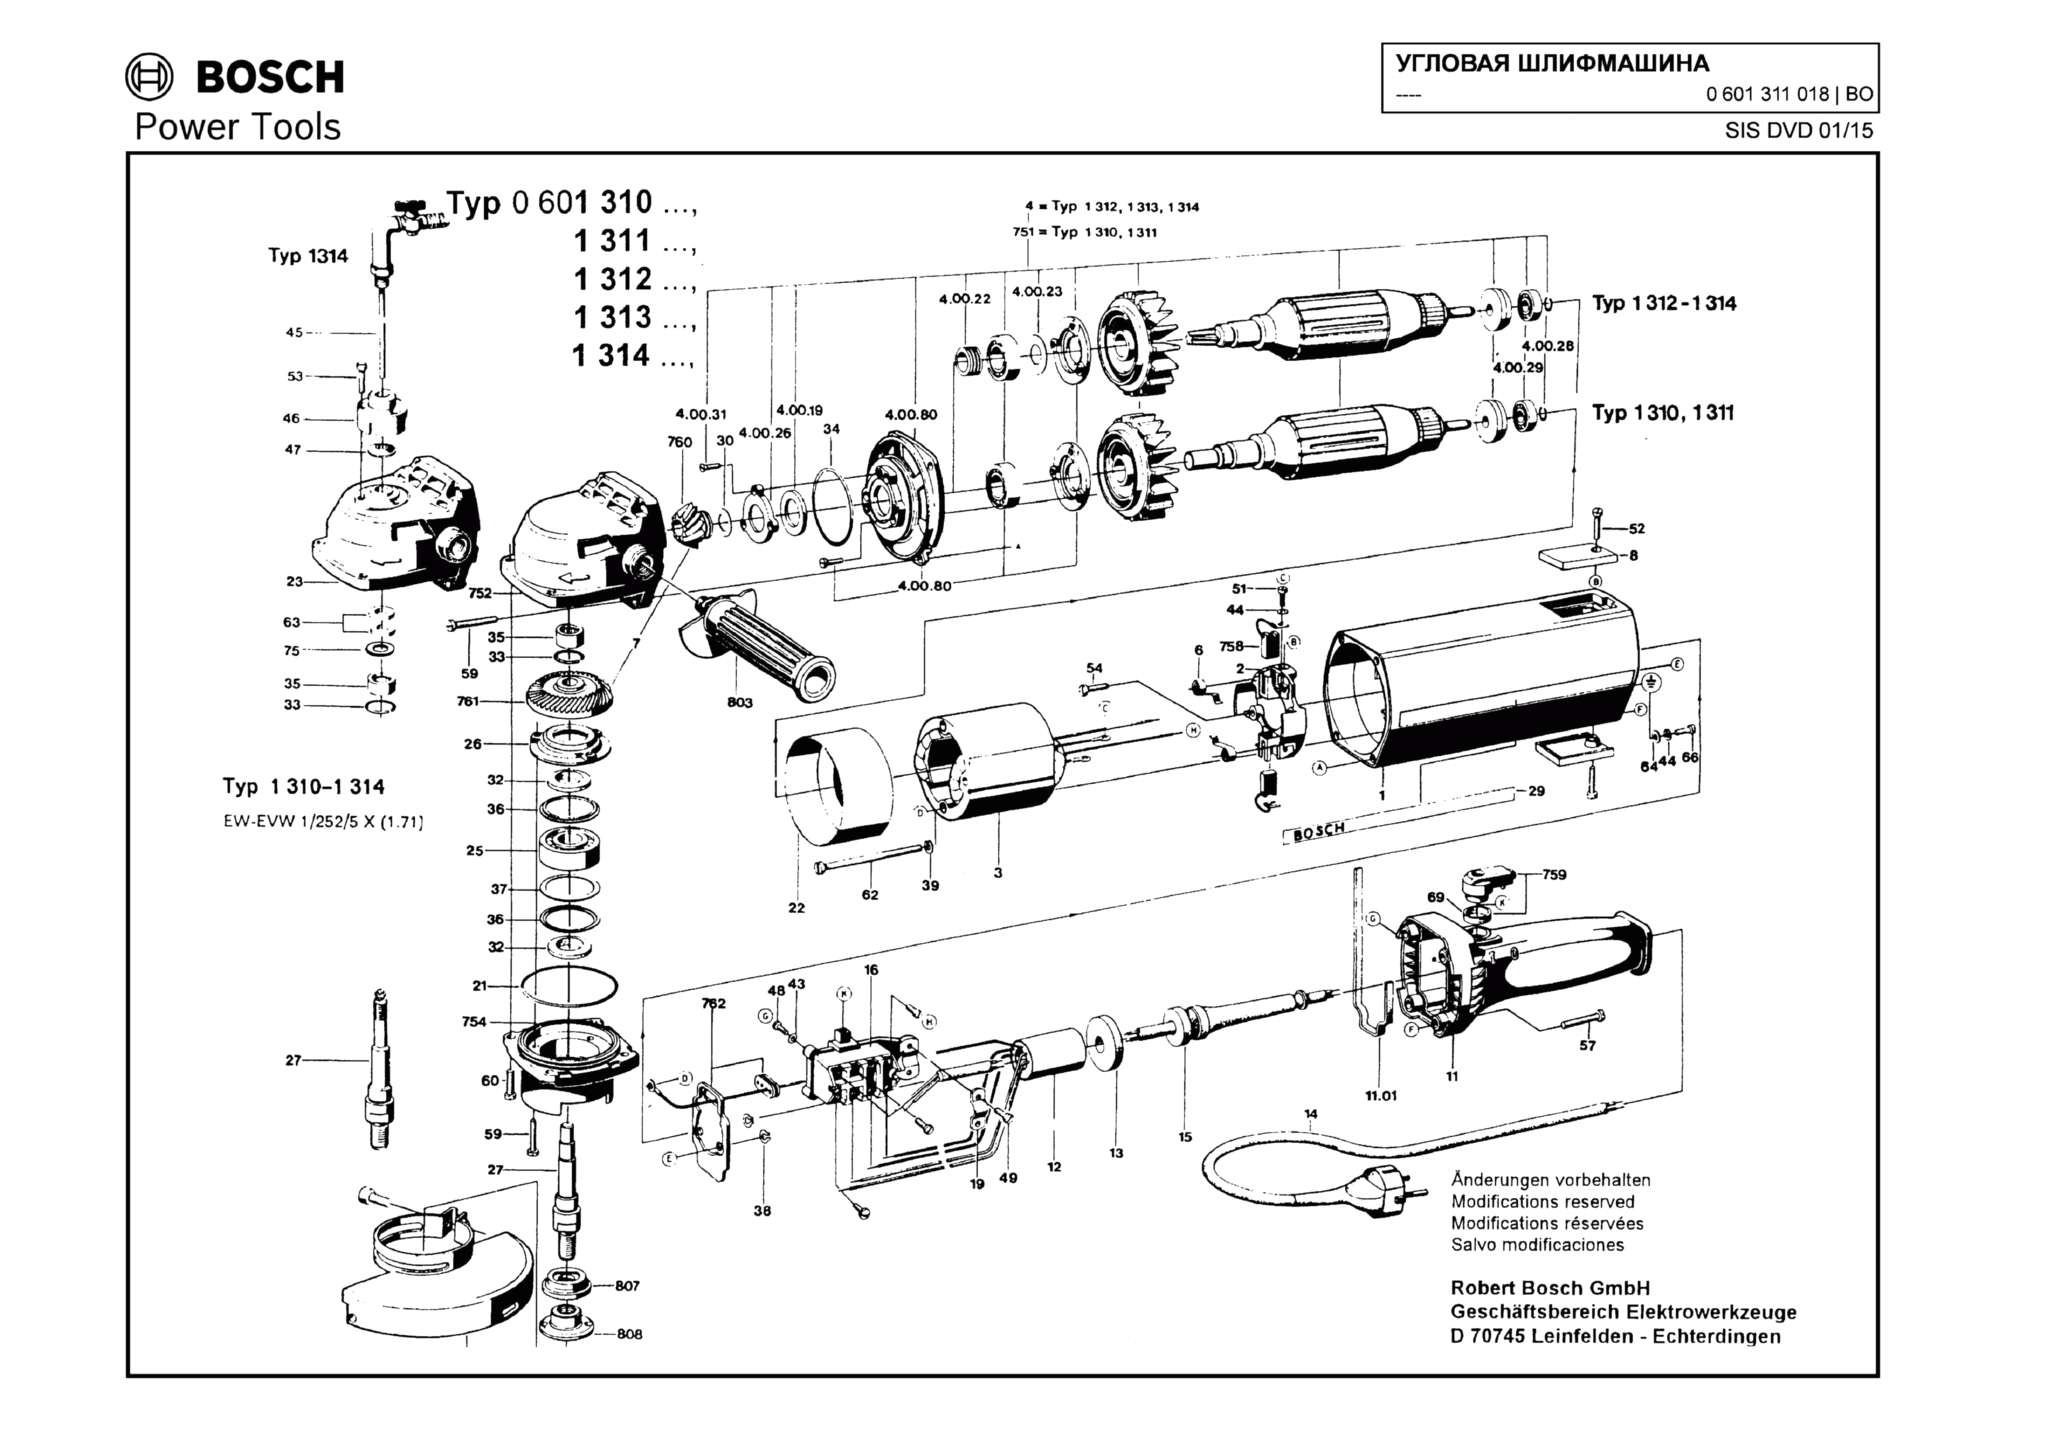 Запчасти, схема и деталировка Bosch (ТИП 0601311018)